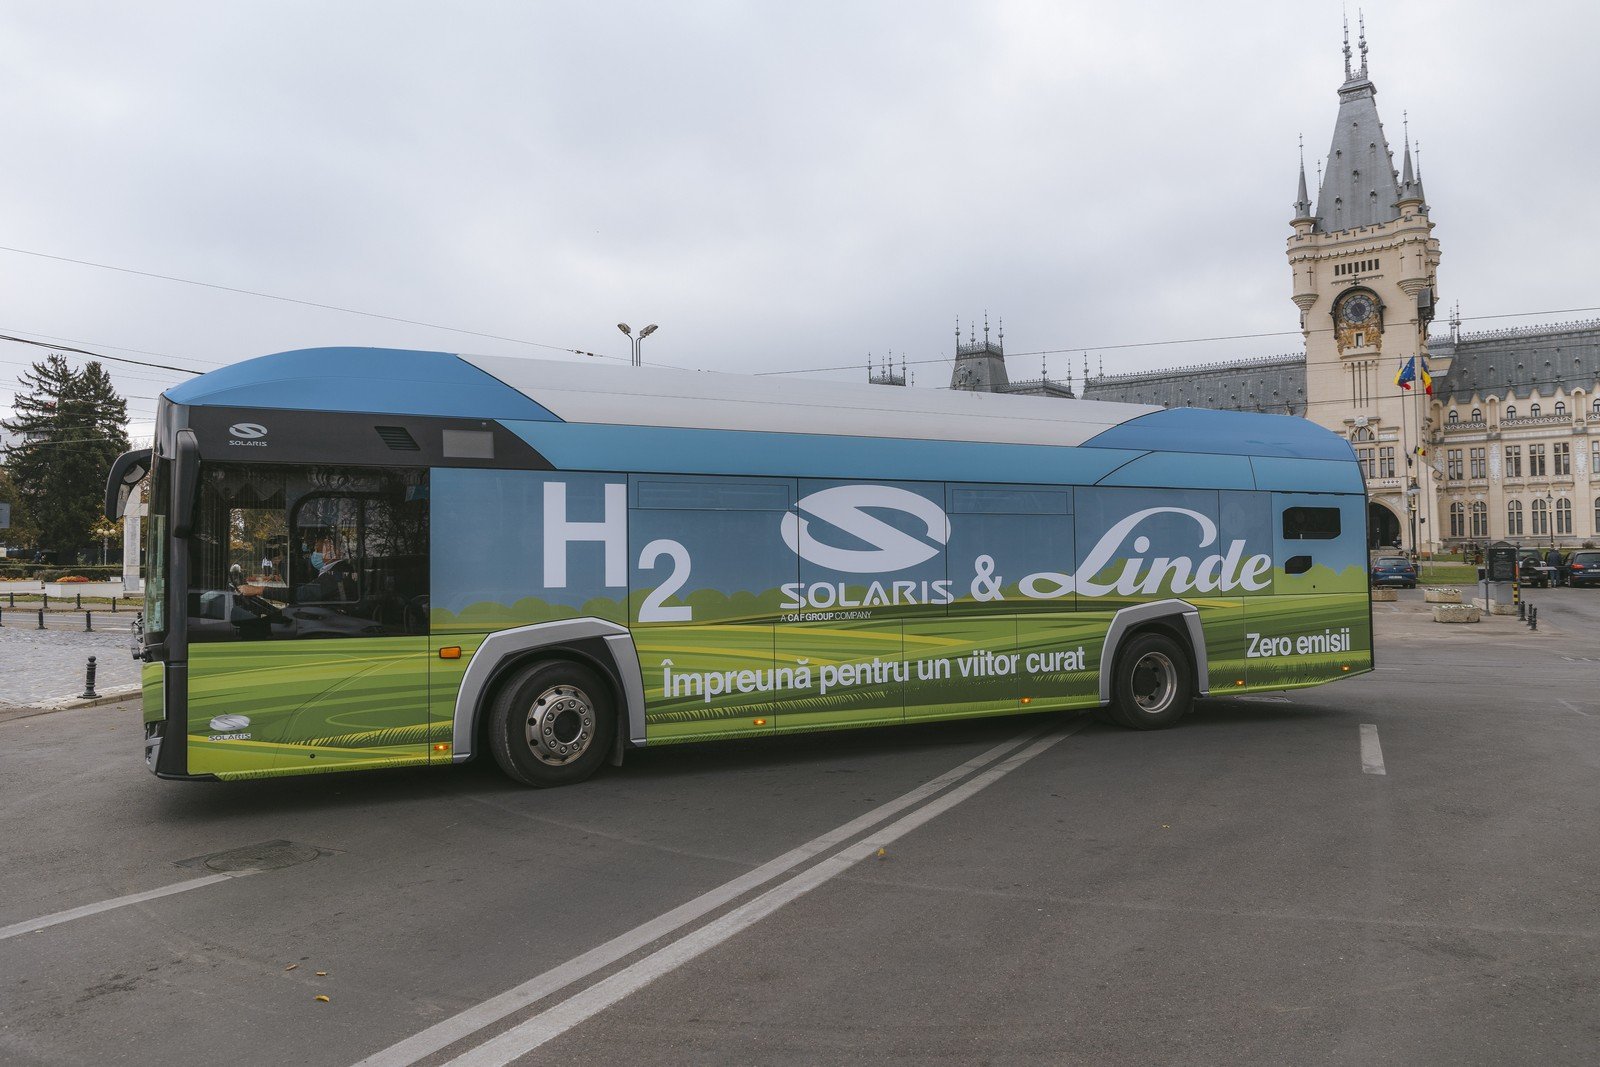  Autobuz cu hidrogen, în teste pe străzile oraşului. Marele avantaj – autonomia